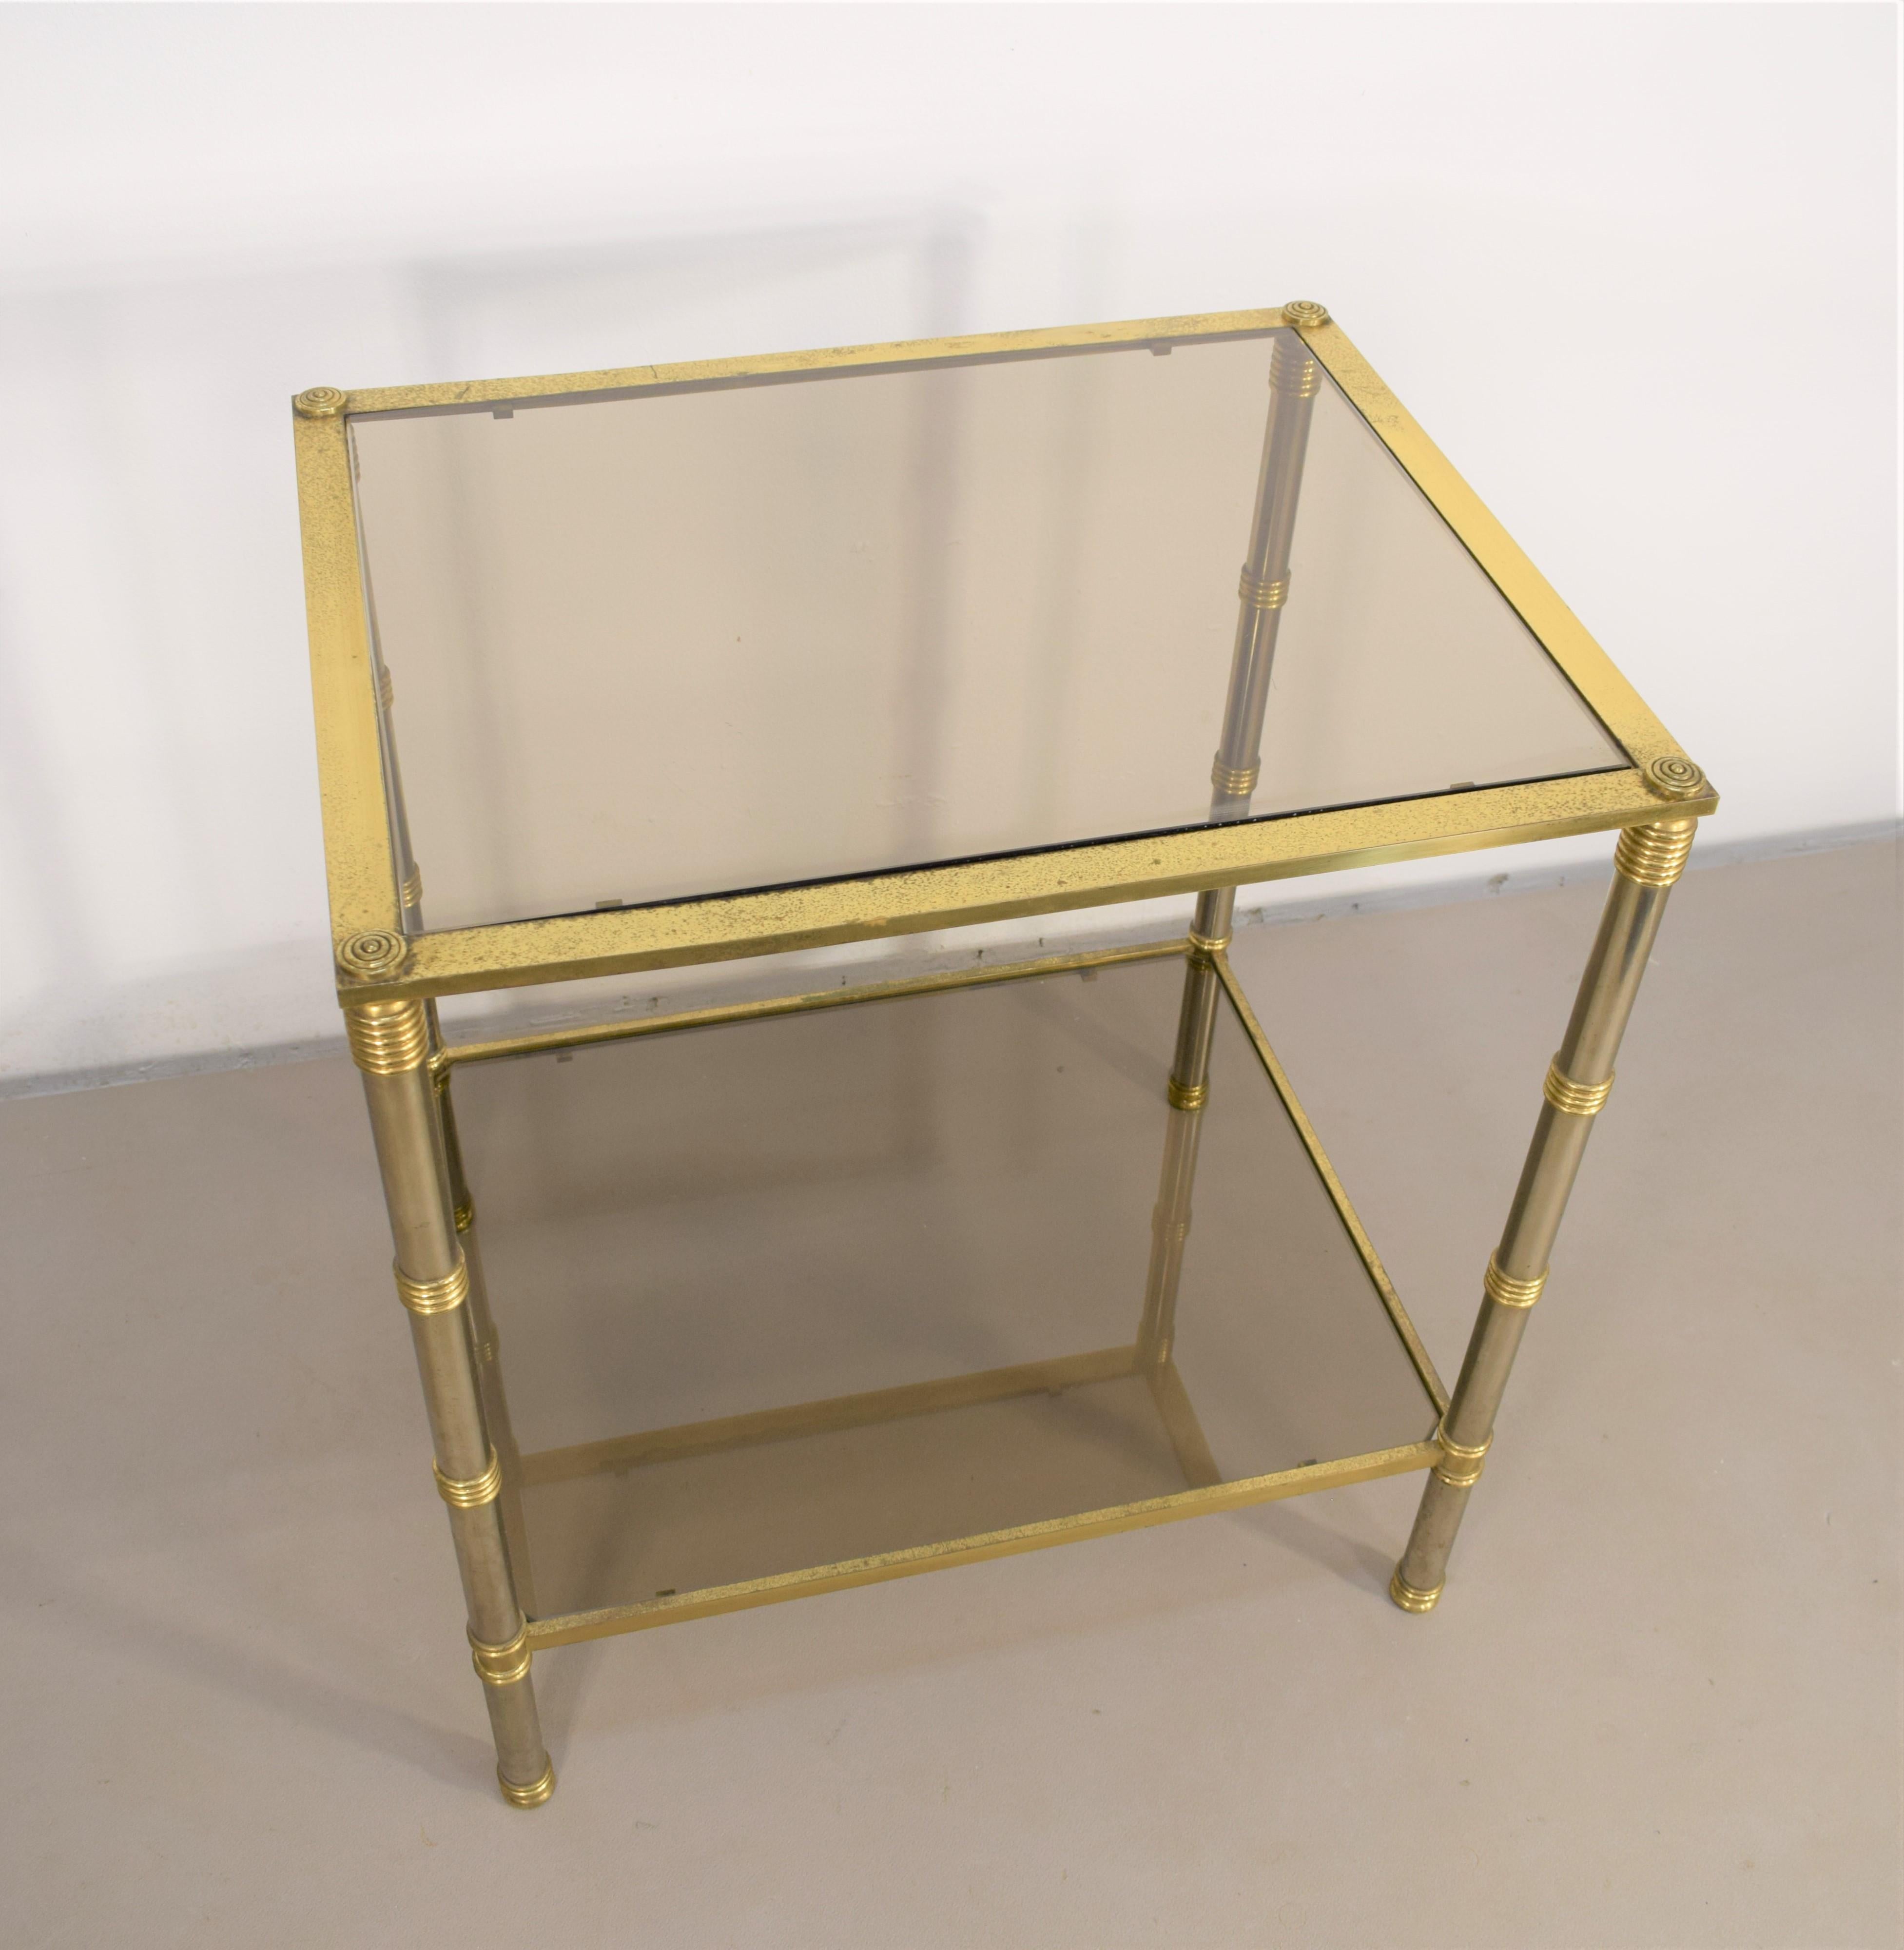 Table basse italienne, laiton, acier et verre fumé, années 1960
Dimensionis H= 60 cm ; W= 55 cm ; D= 45 cm.